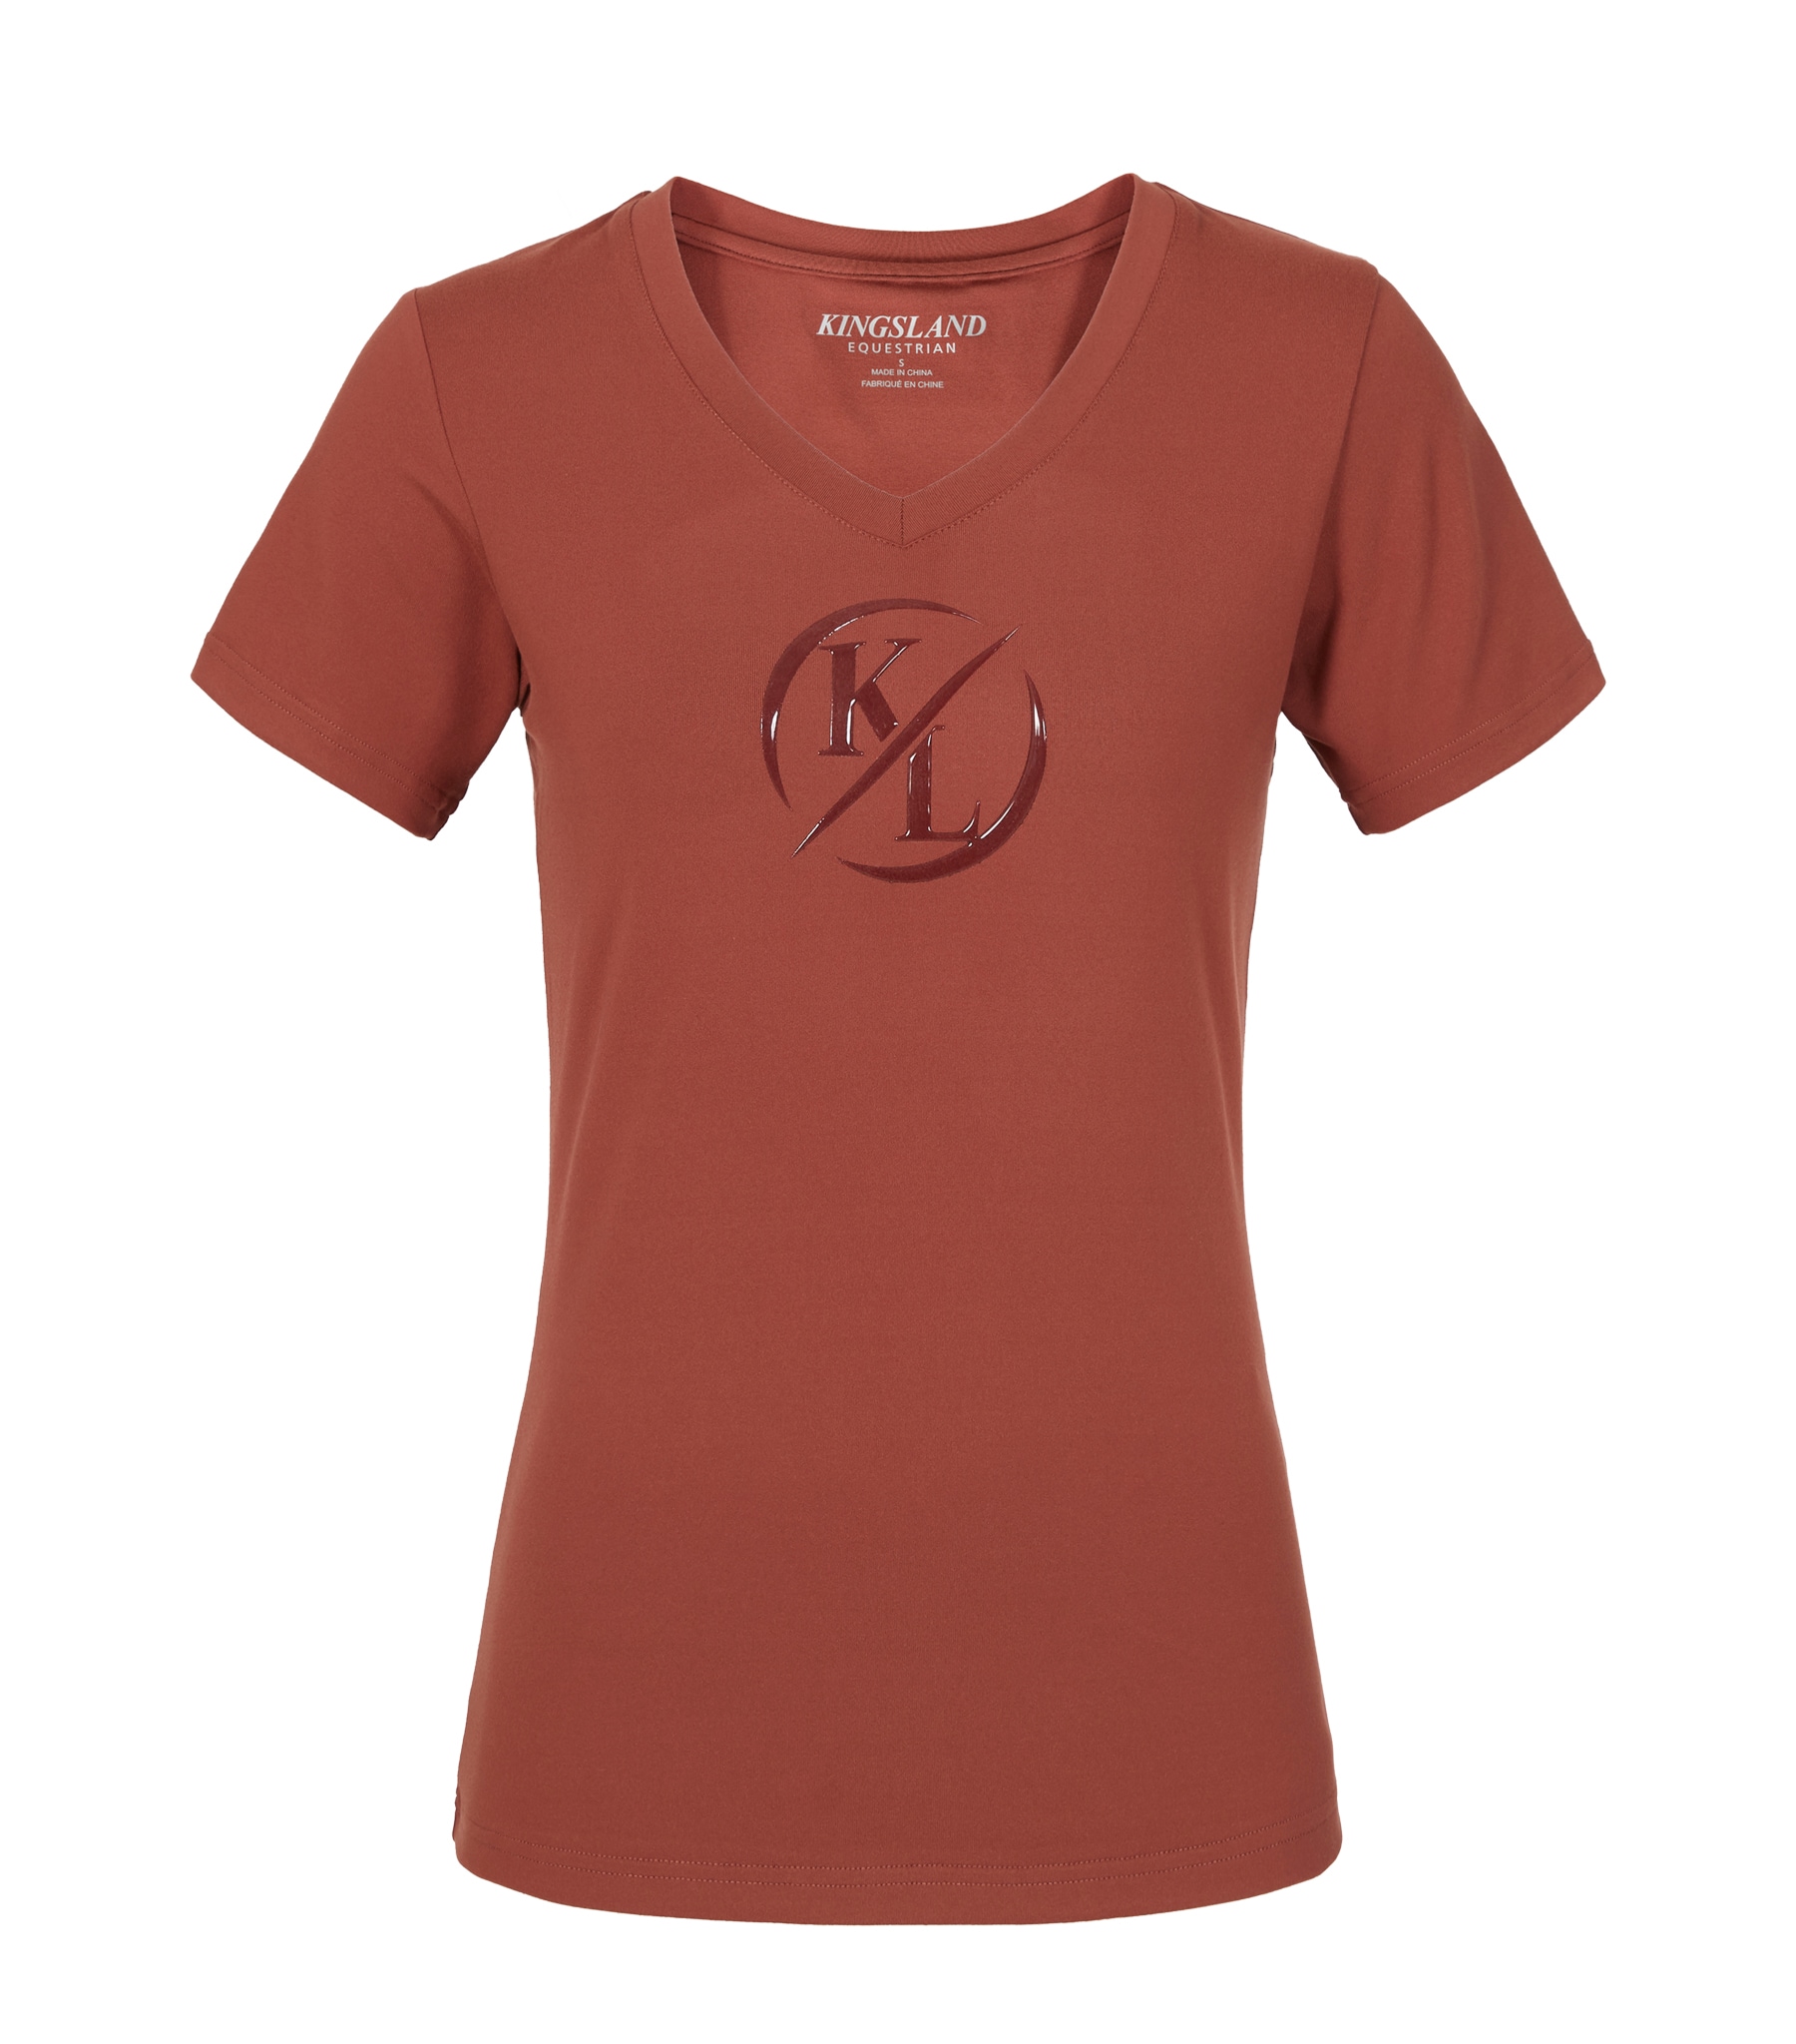 KLolania T-shirt - Brown Mahogany